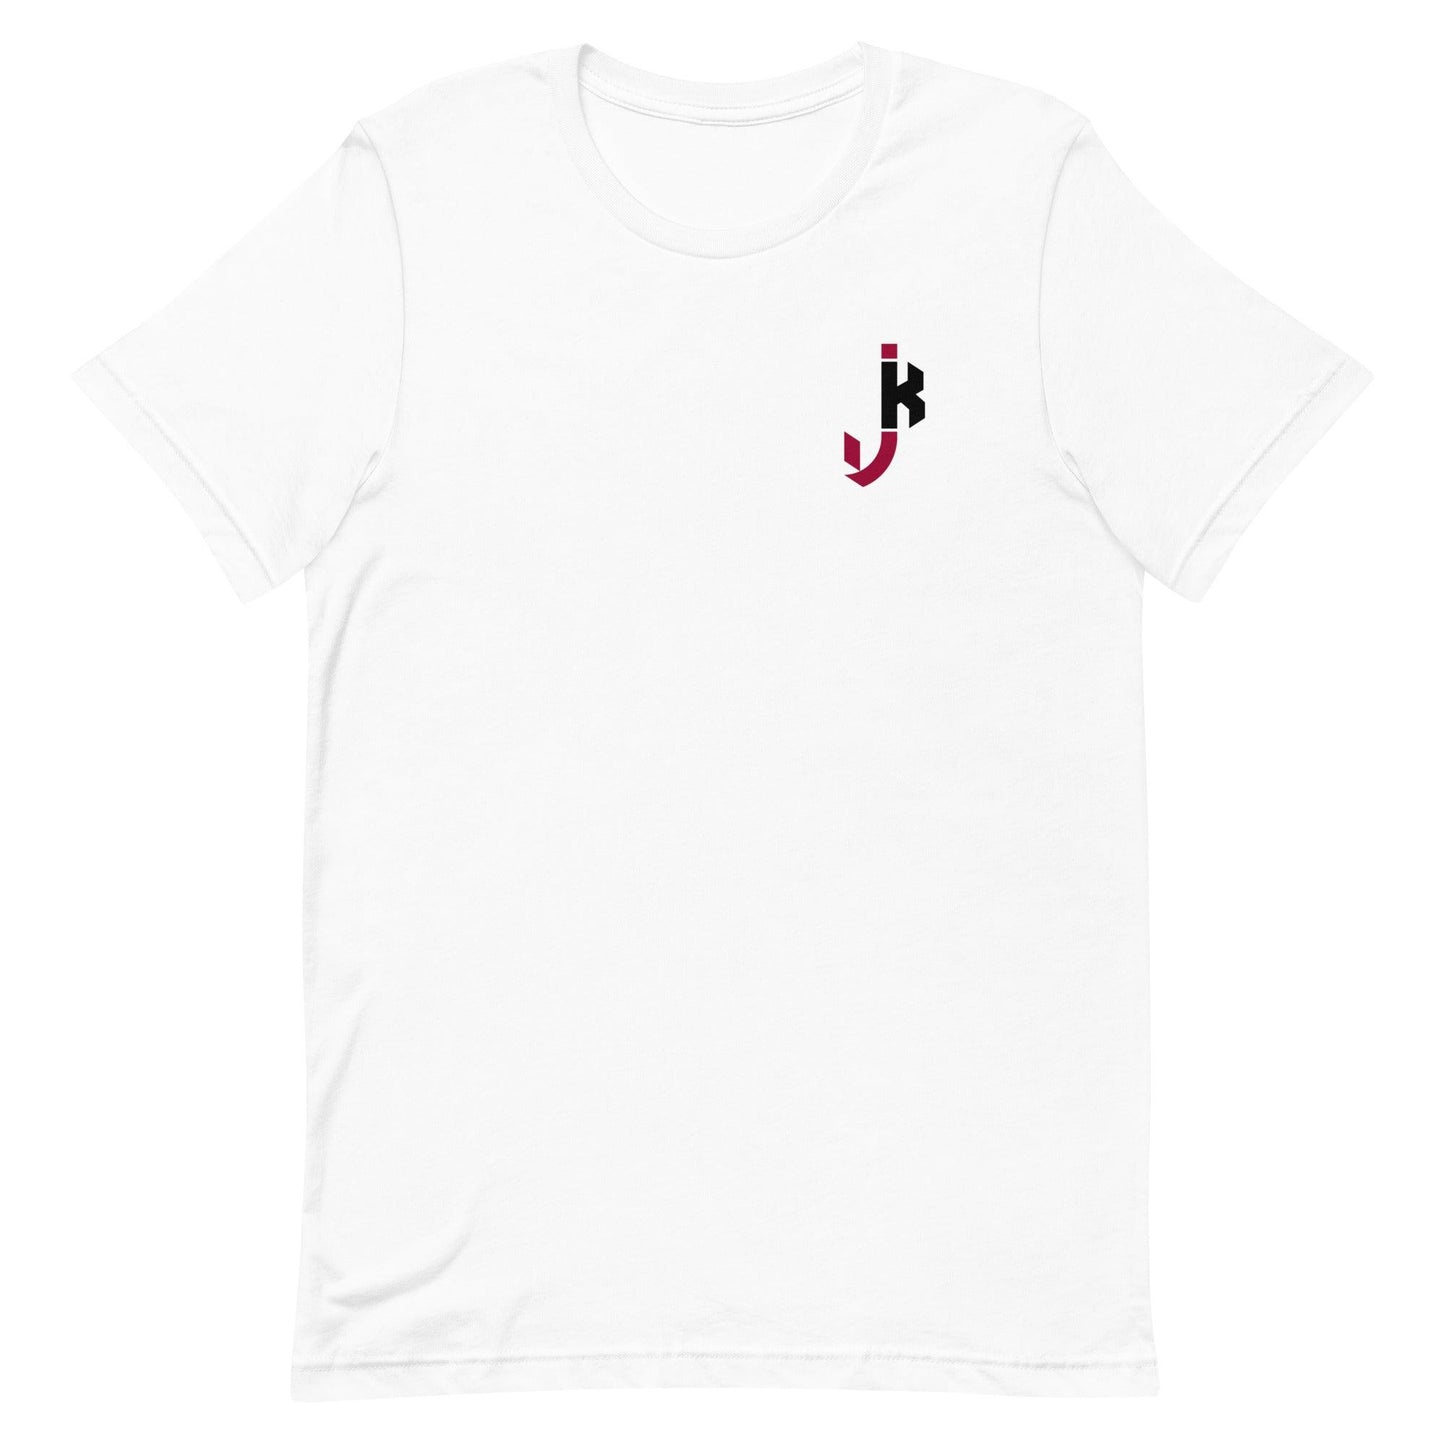 Jalon Kilgore "Essential" t-shirt - Fan Arch